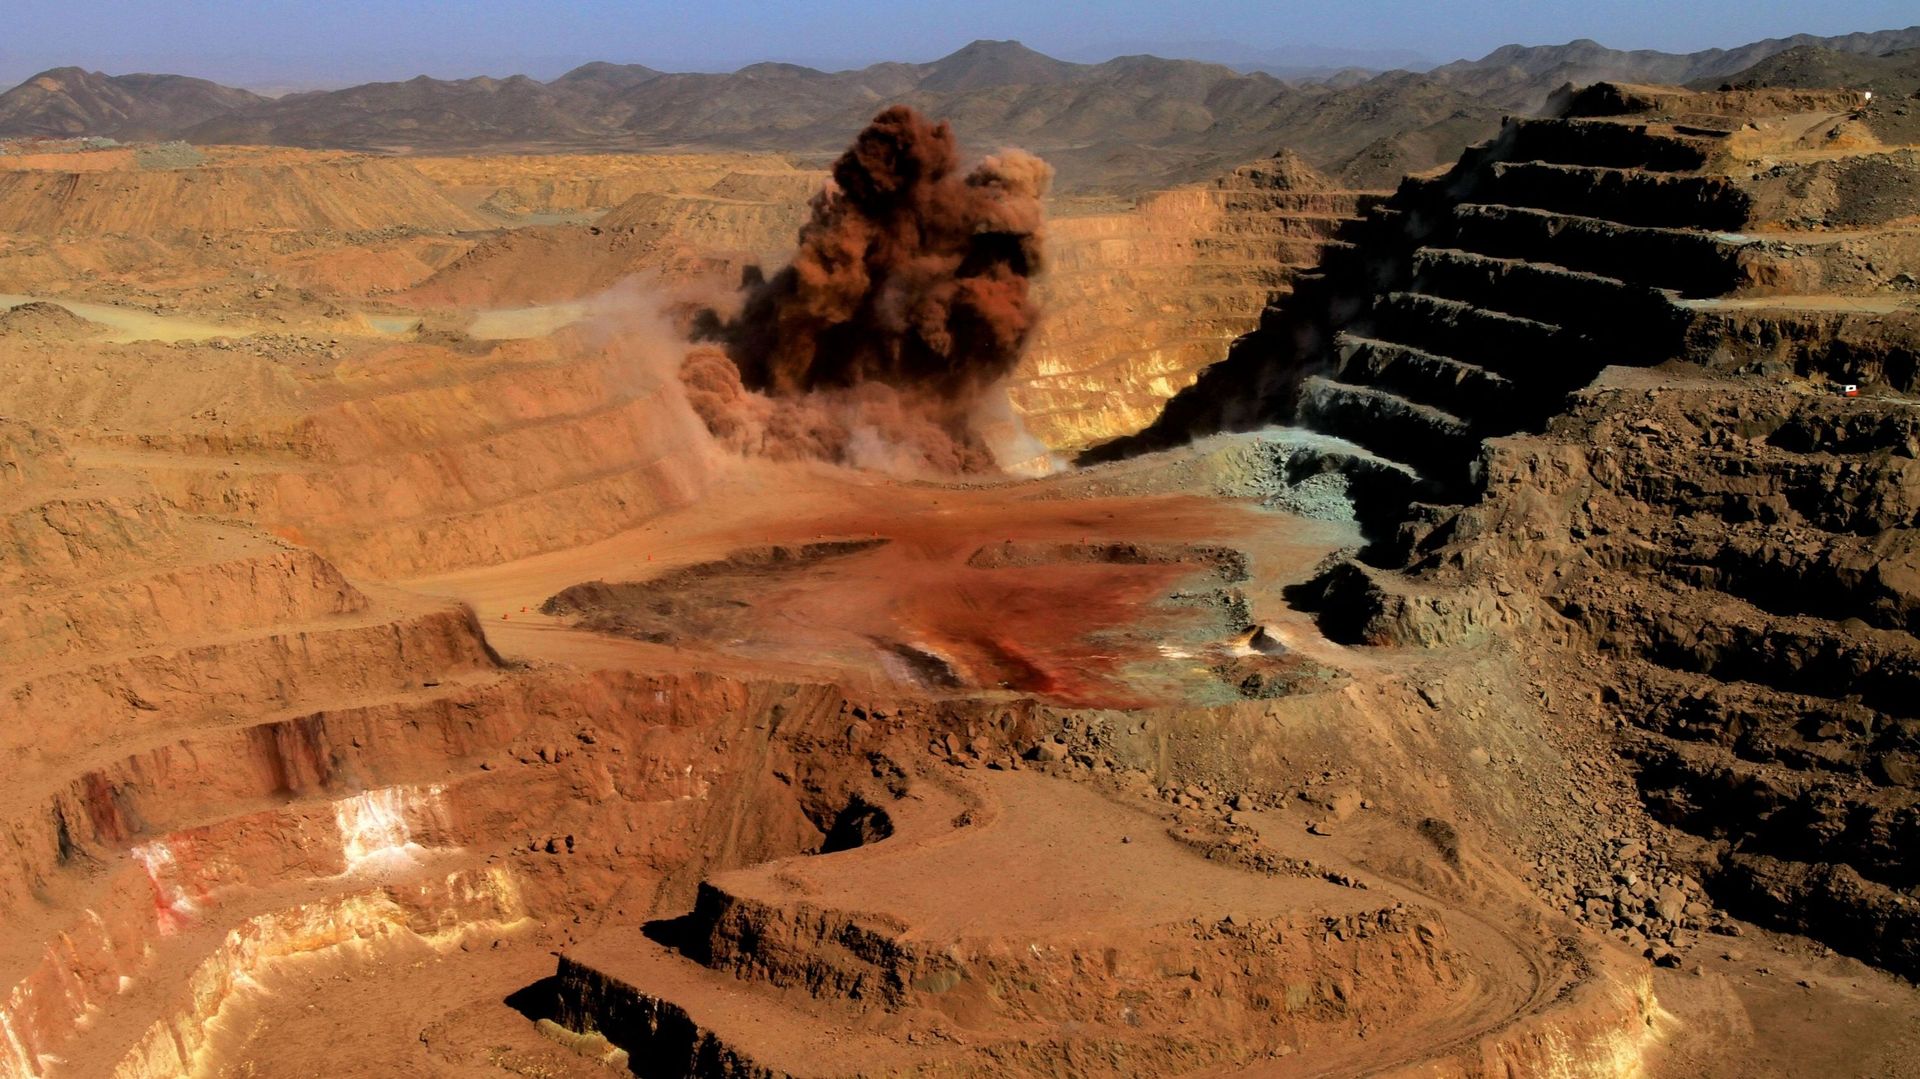 Image d'illustration - La mine d'or de la société Ariab dans le désert soudanais, à 800 km au nord-est de la capitale Khartoum, le 3 octobre 2011.